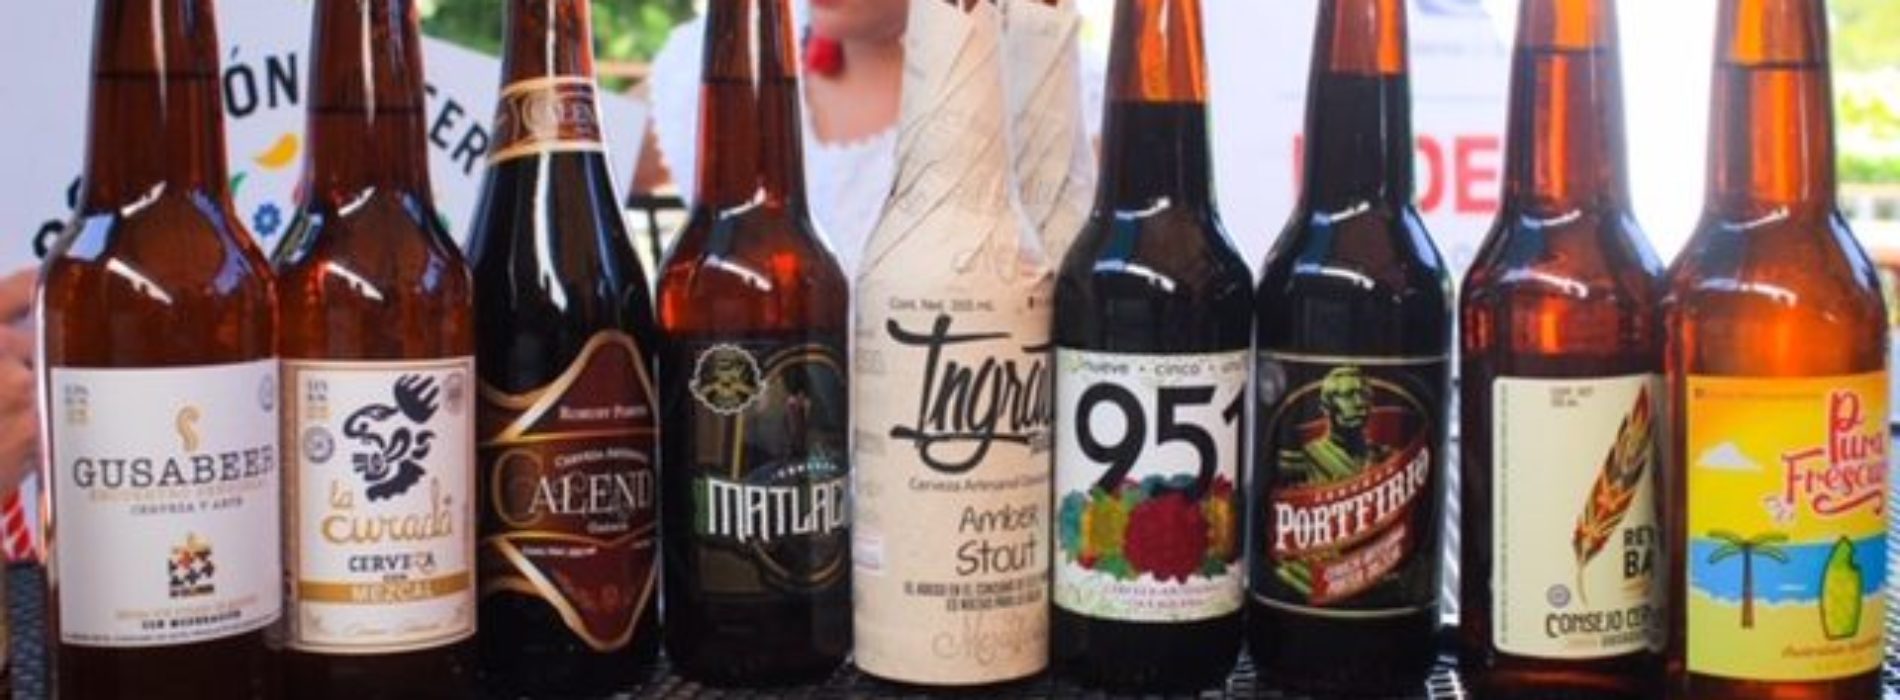 Cerveza oaxaqueña se expondrá en el Festival Cerveza México,
el más importante de América Latina